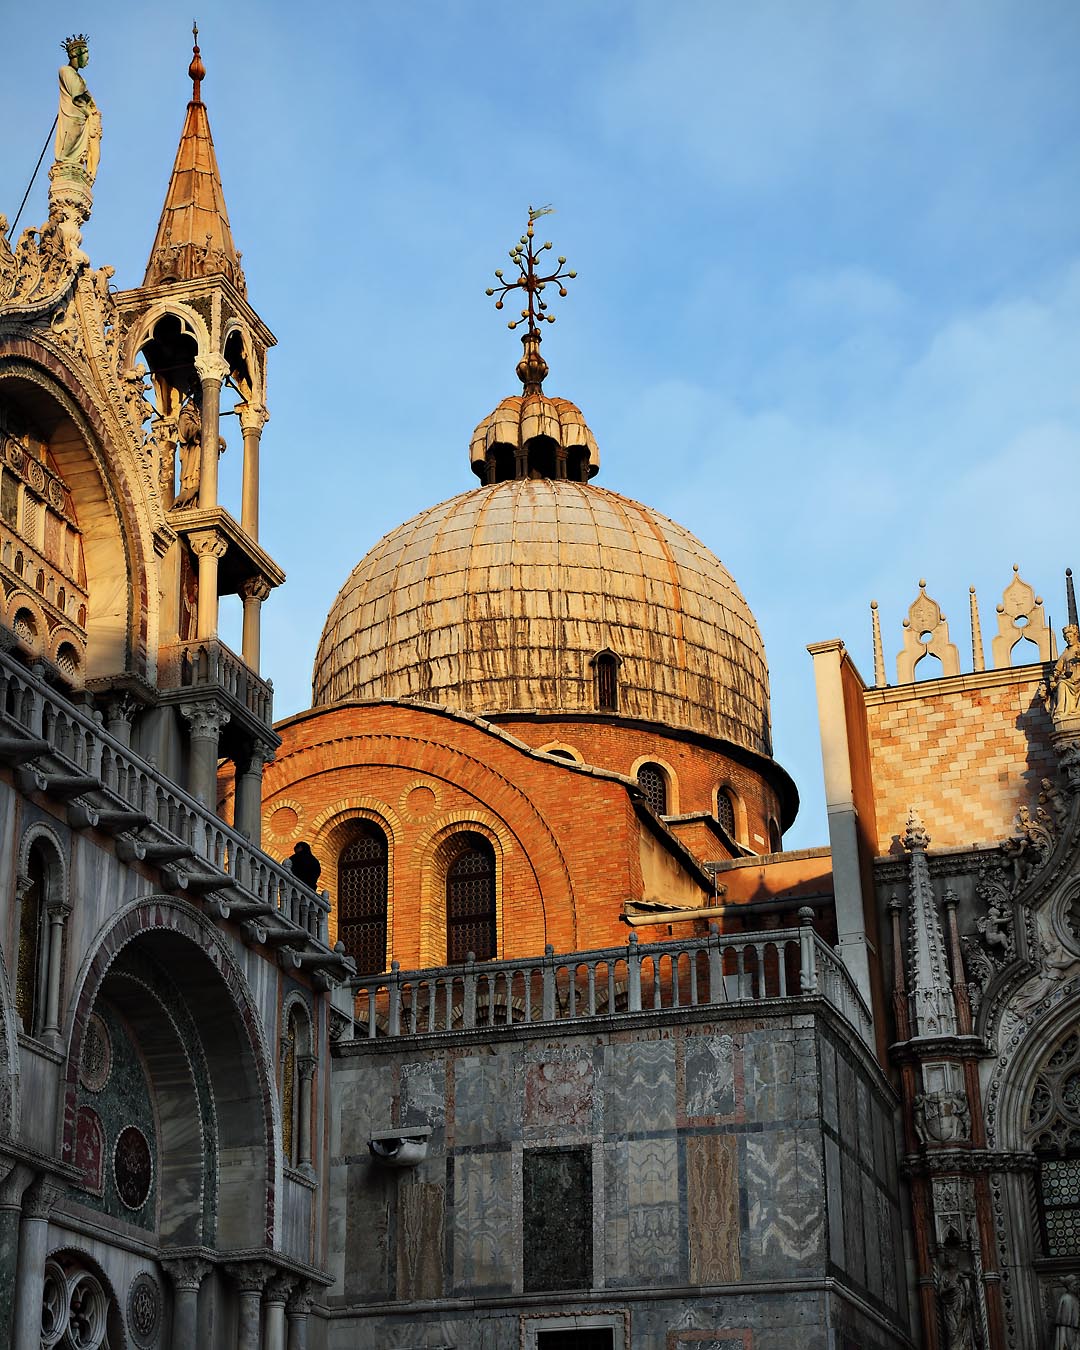 Basilica di San Marco #3, Venice, Italy, 2008